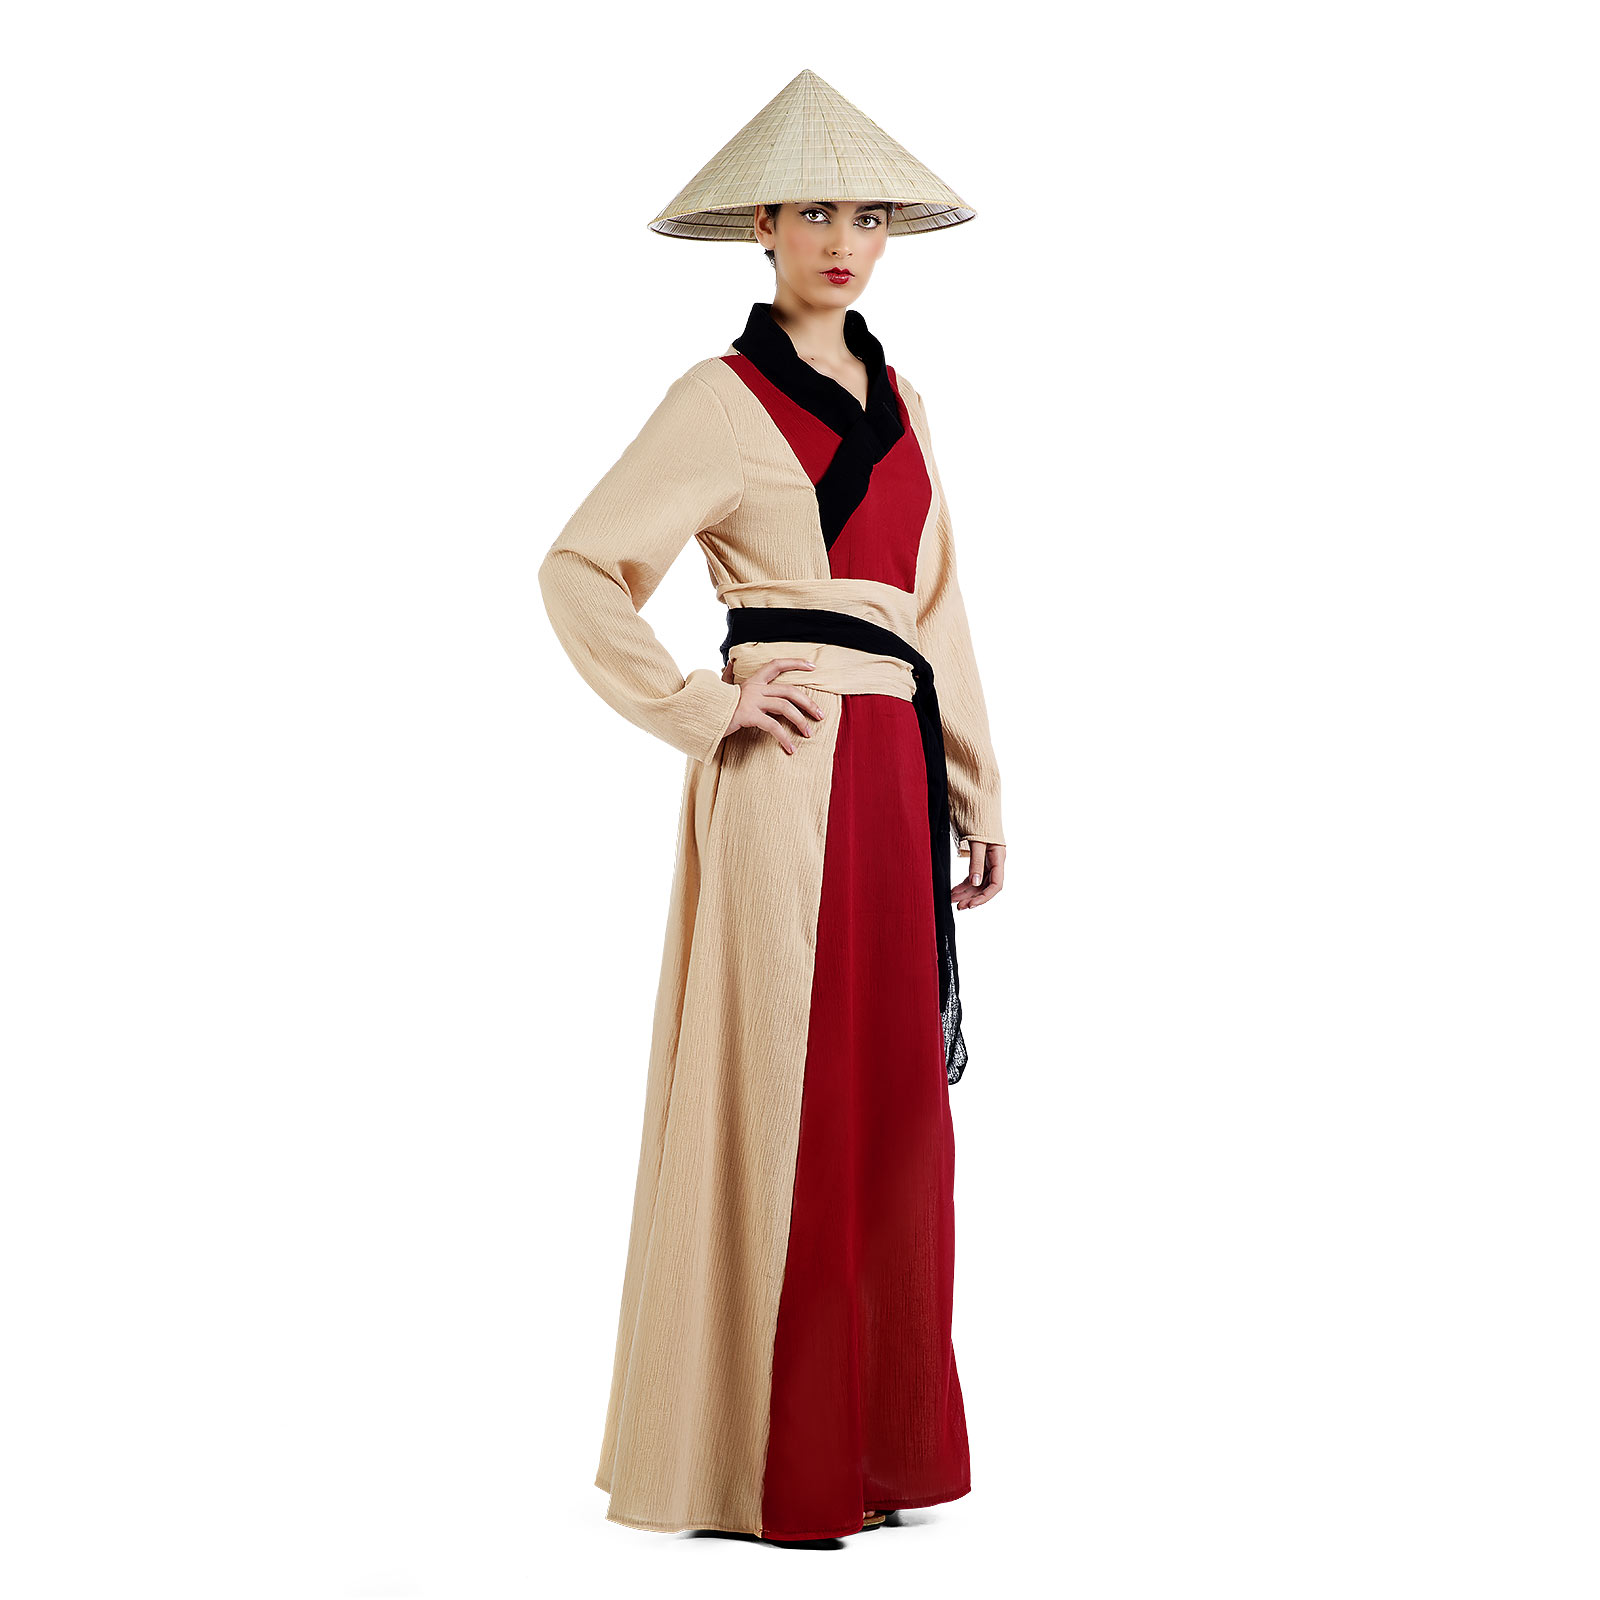 Chinesische Dame - Kostüm